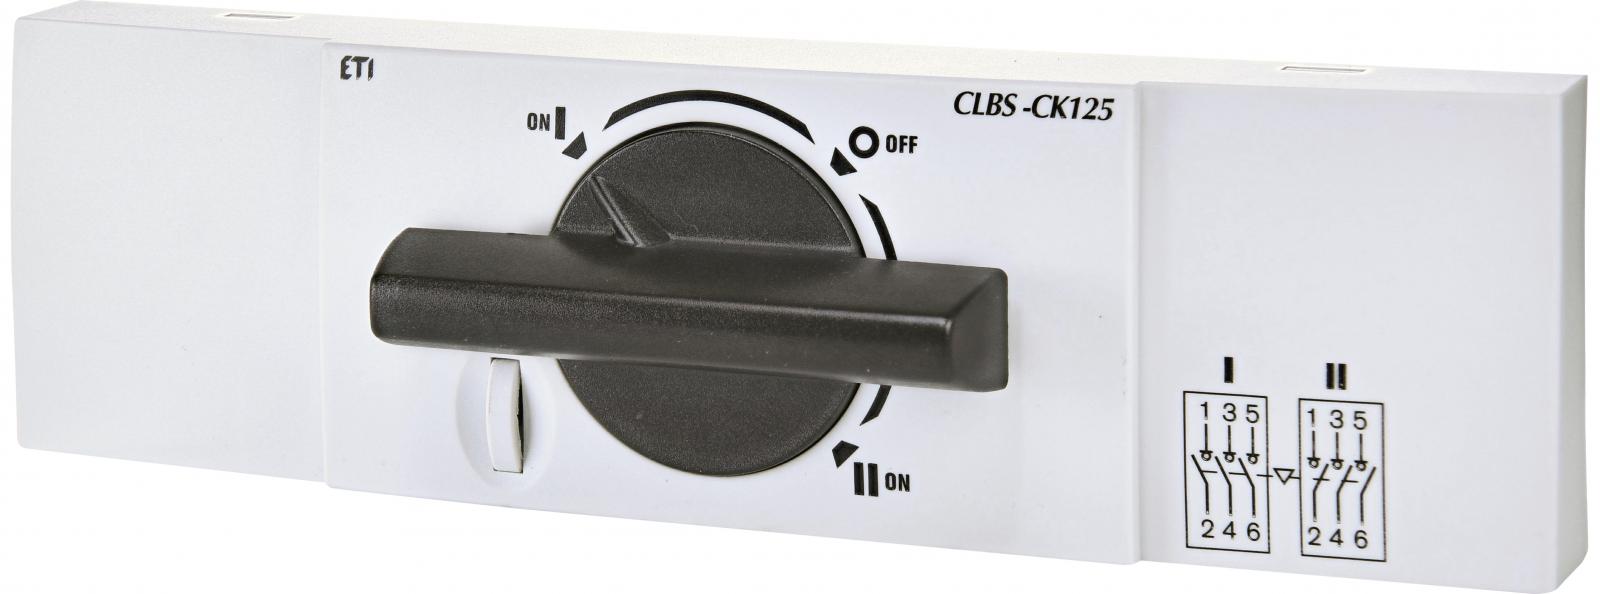 Комплект соединения в "1-0-2" CLBS-CK125 (для CLBS 100-125А)